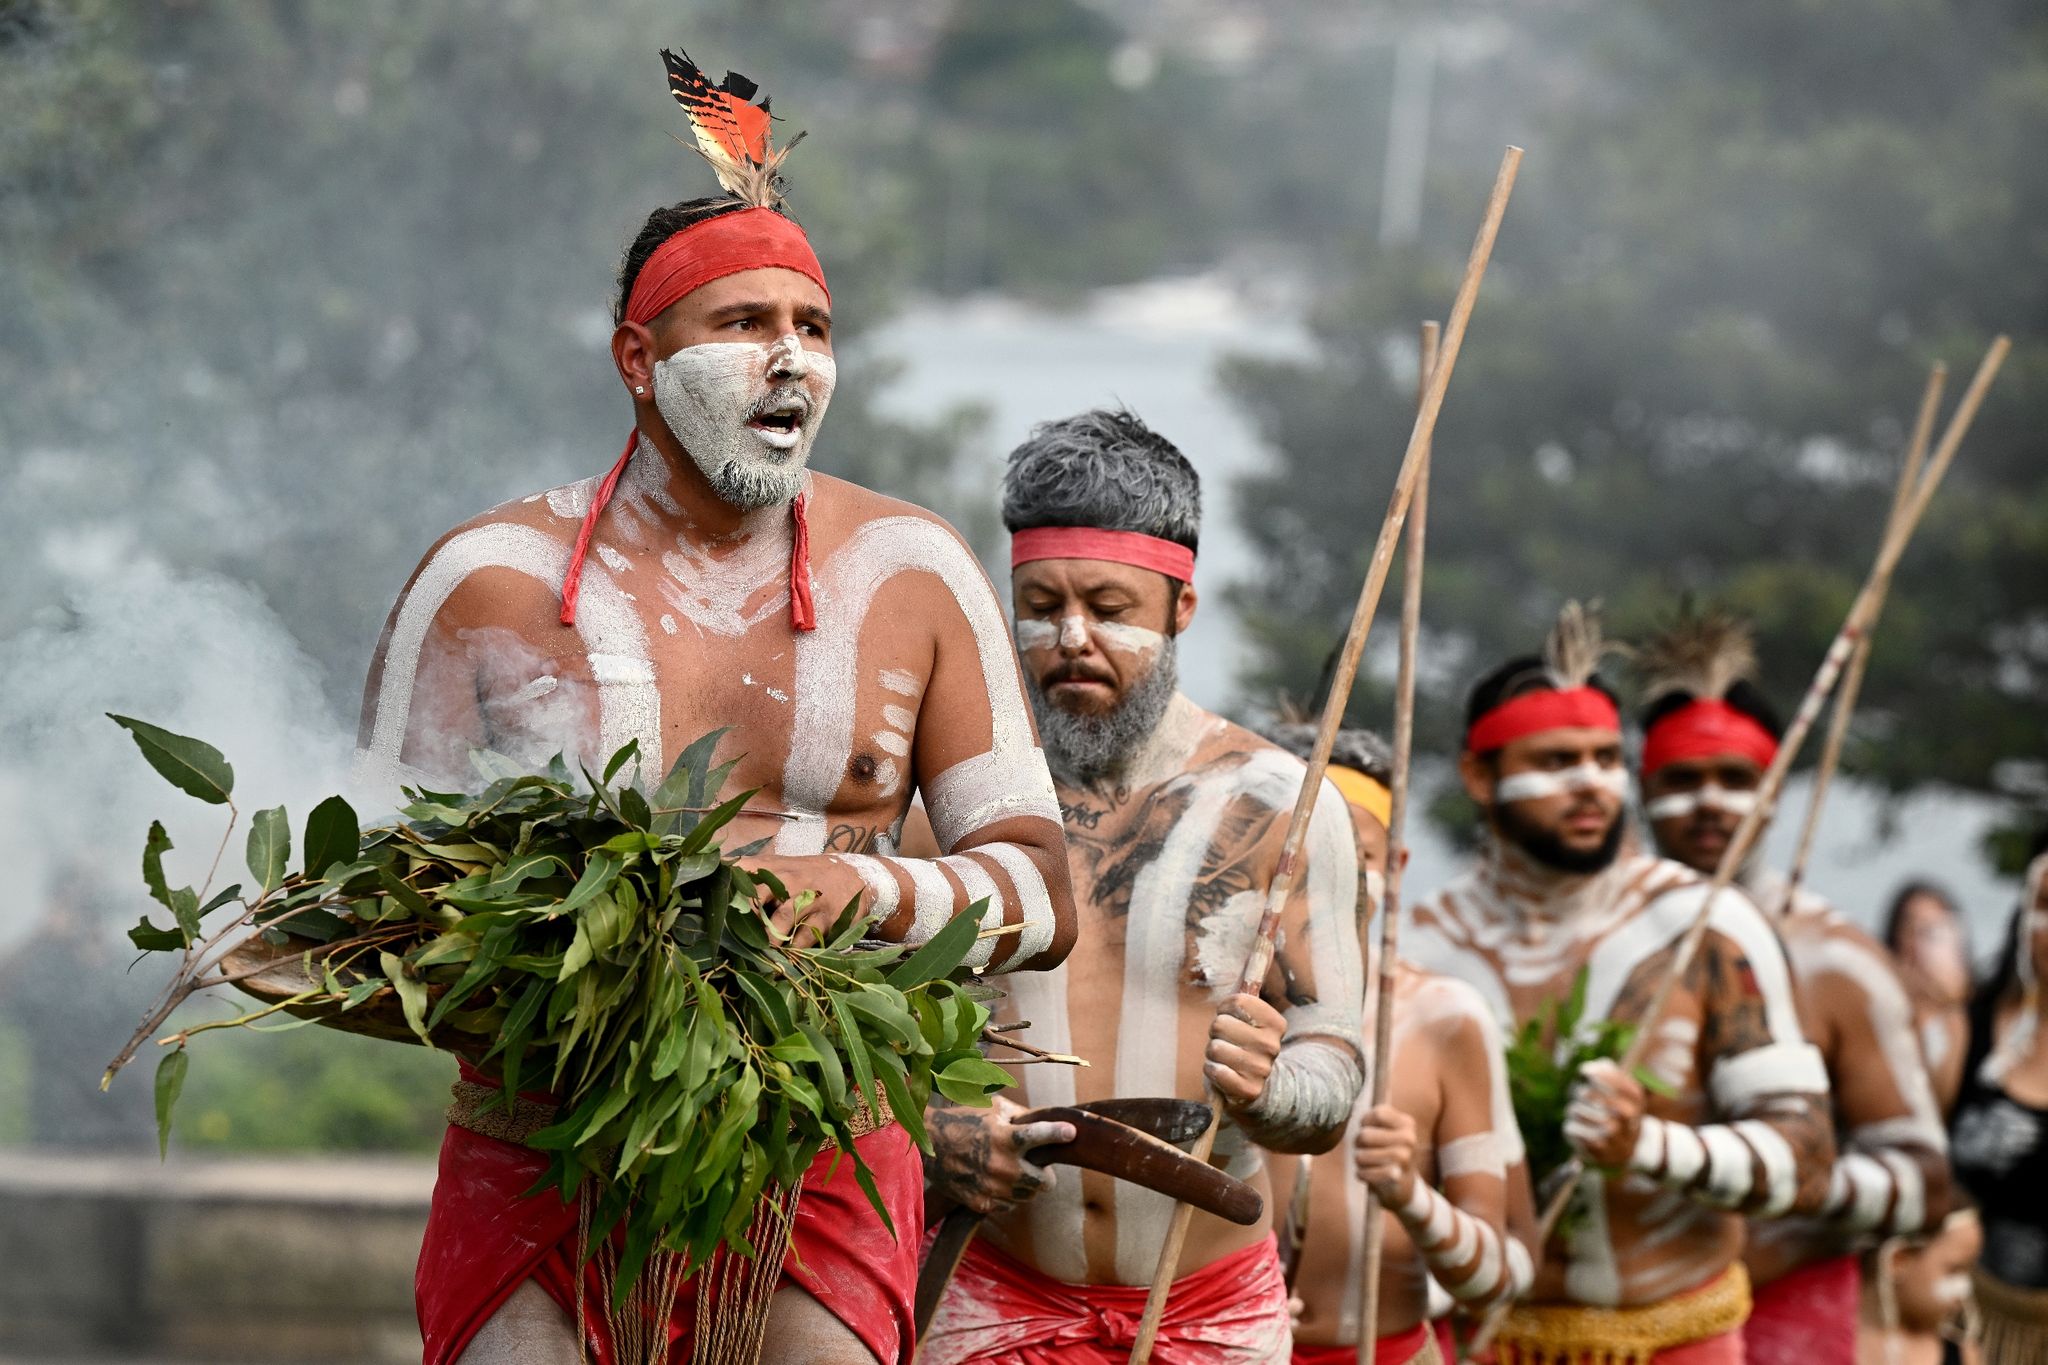 Vielerorts feiern Indigene ihre Kultur mit Tänzen und Gesängen.